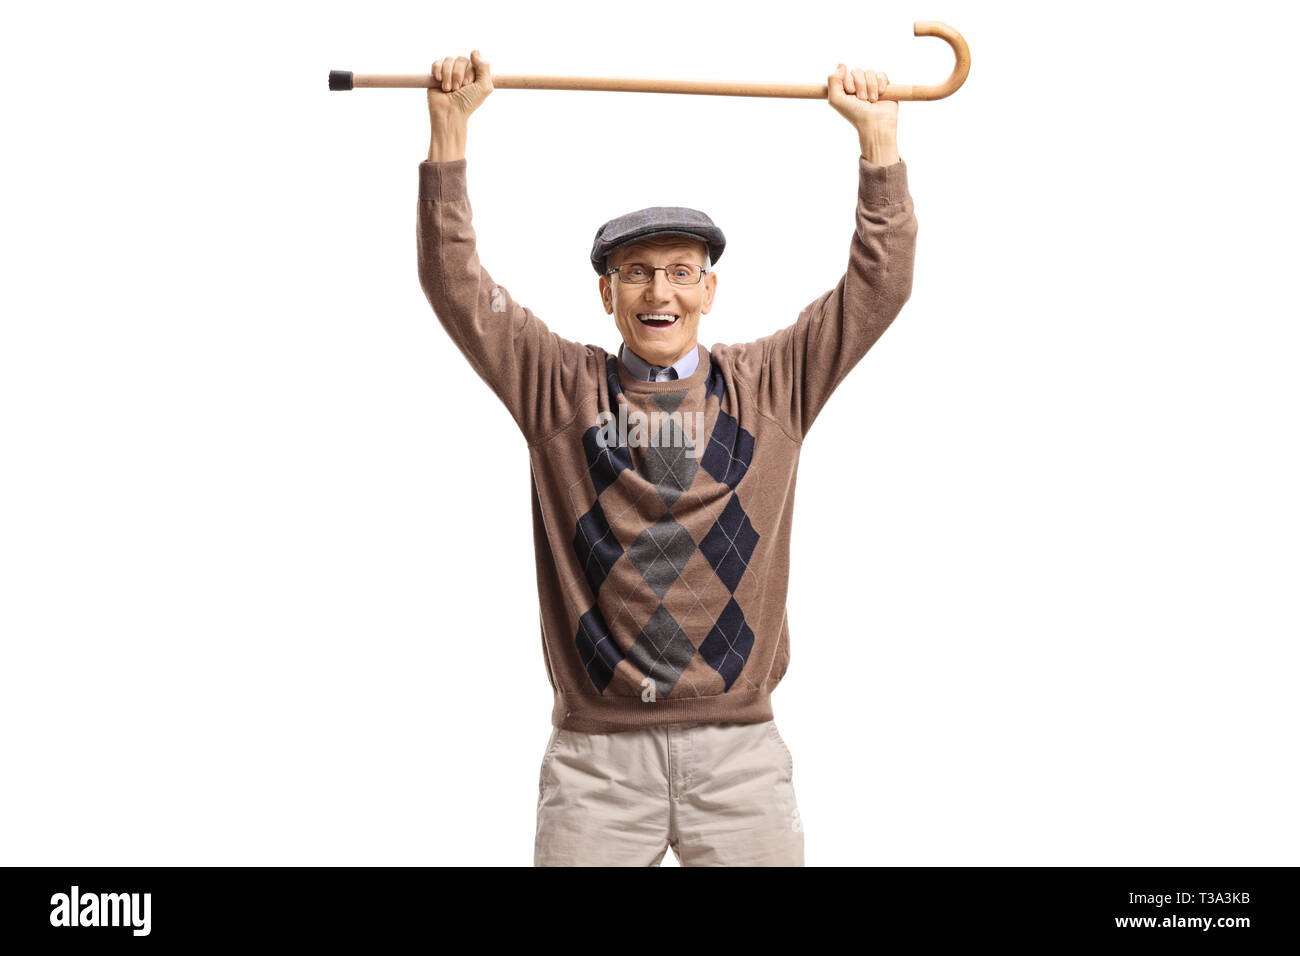 Happy senior man holding a walking cane up isolated on white background Stock Photo